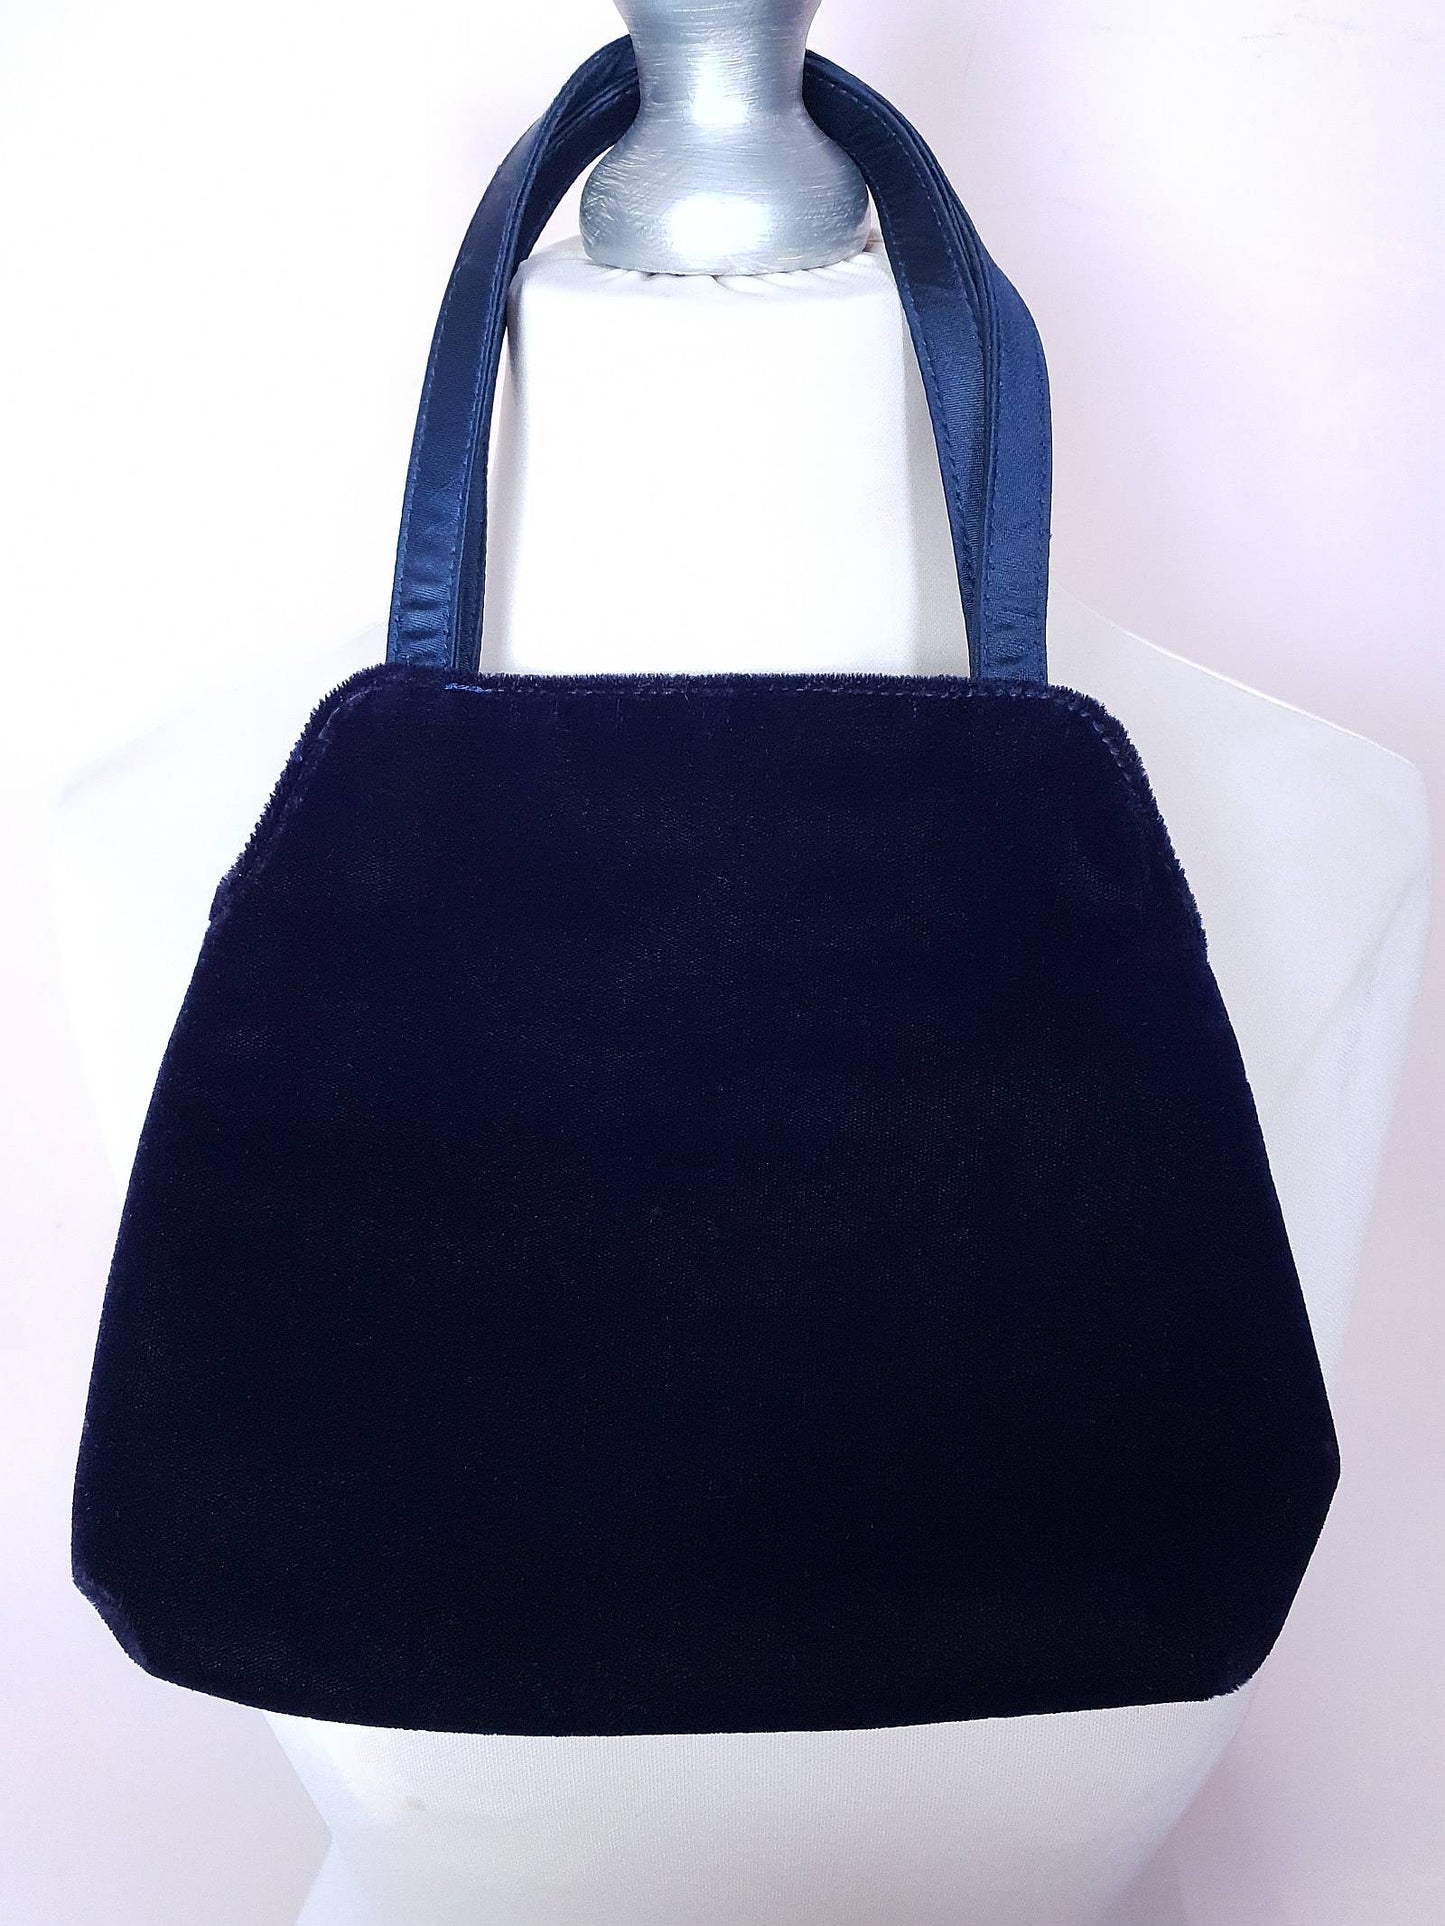 Vintage Laura Ashley Velvet Evening Bag Navy Blue Handbag